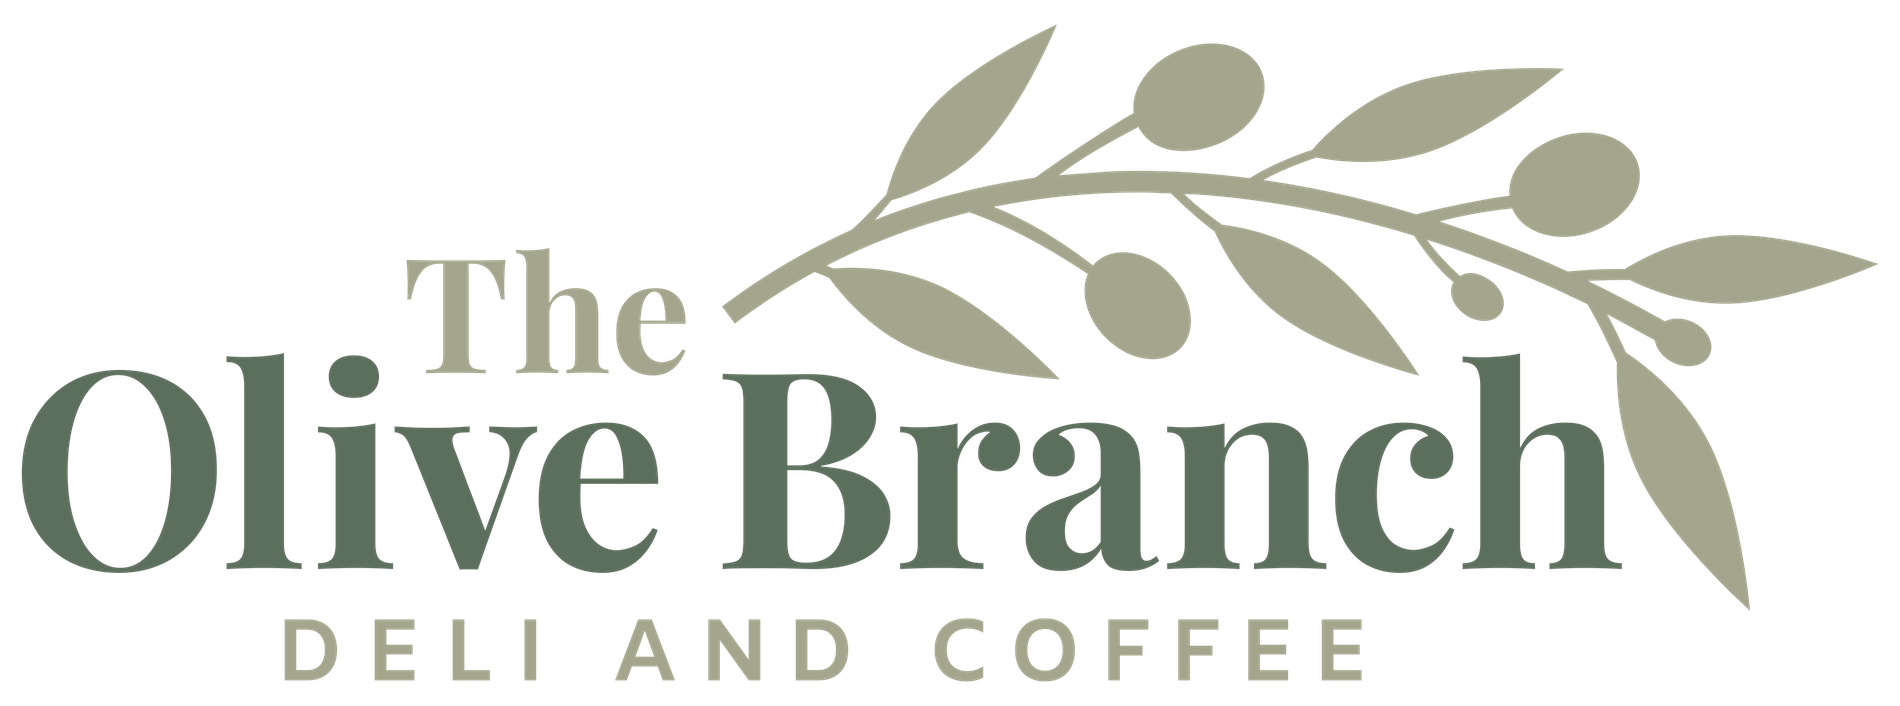 olive branch Logo Full Colour 1